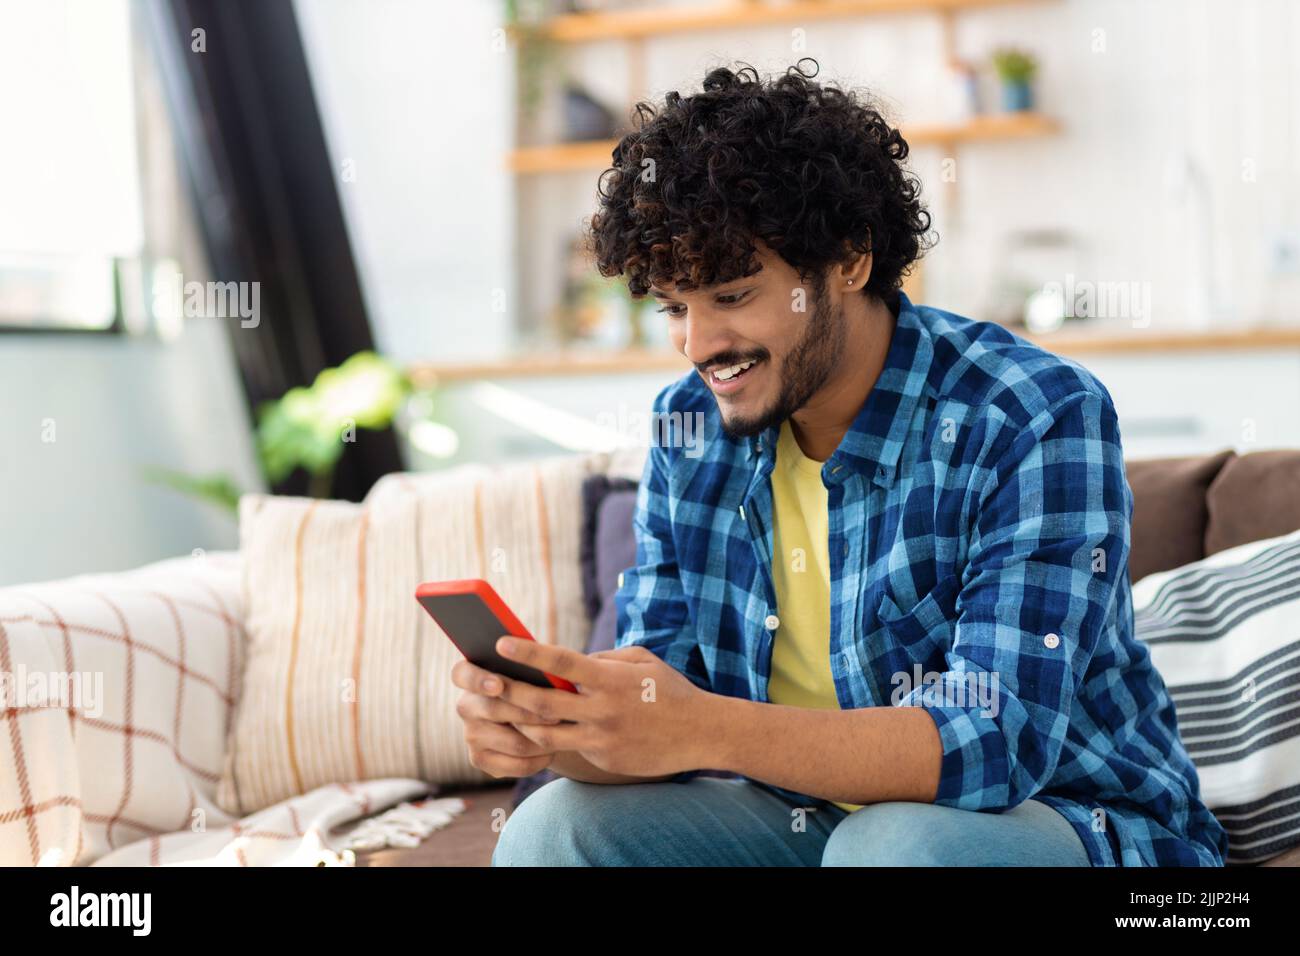 Joven hombre asiático alegre usando teléfono móvil El hombre sostiene el smartphone lee un mensaje, juega juegos Foto de stock